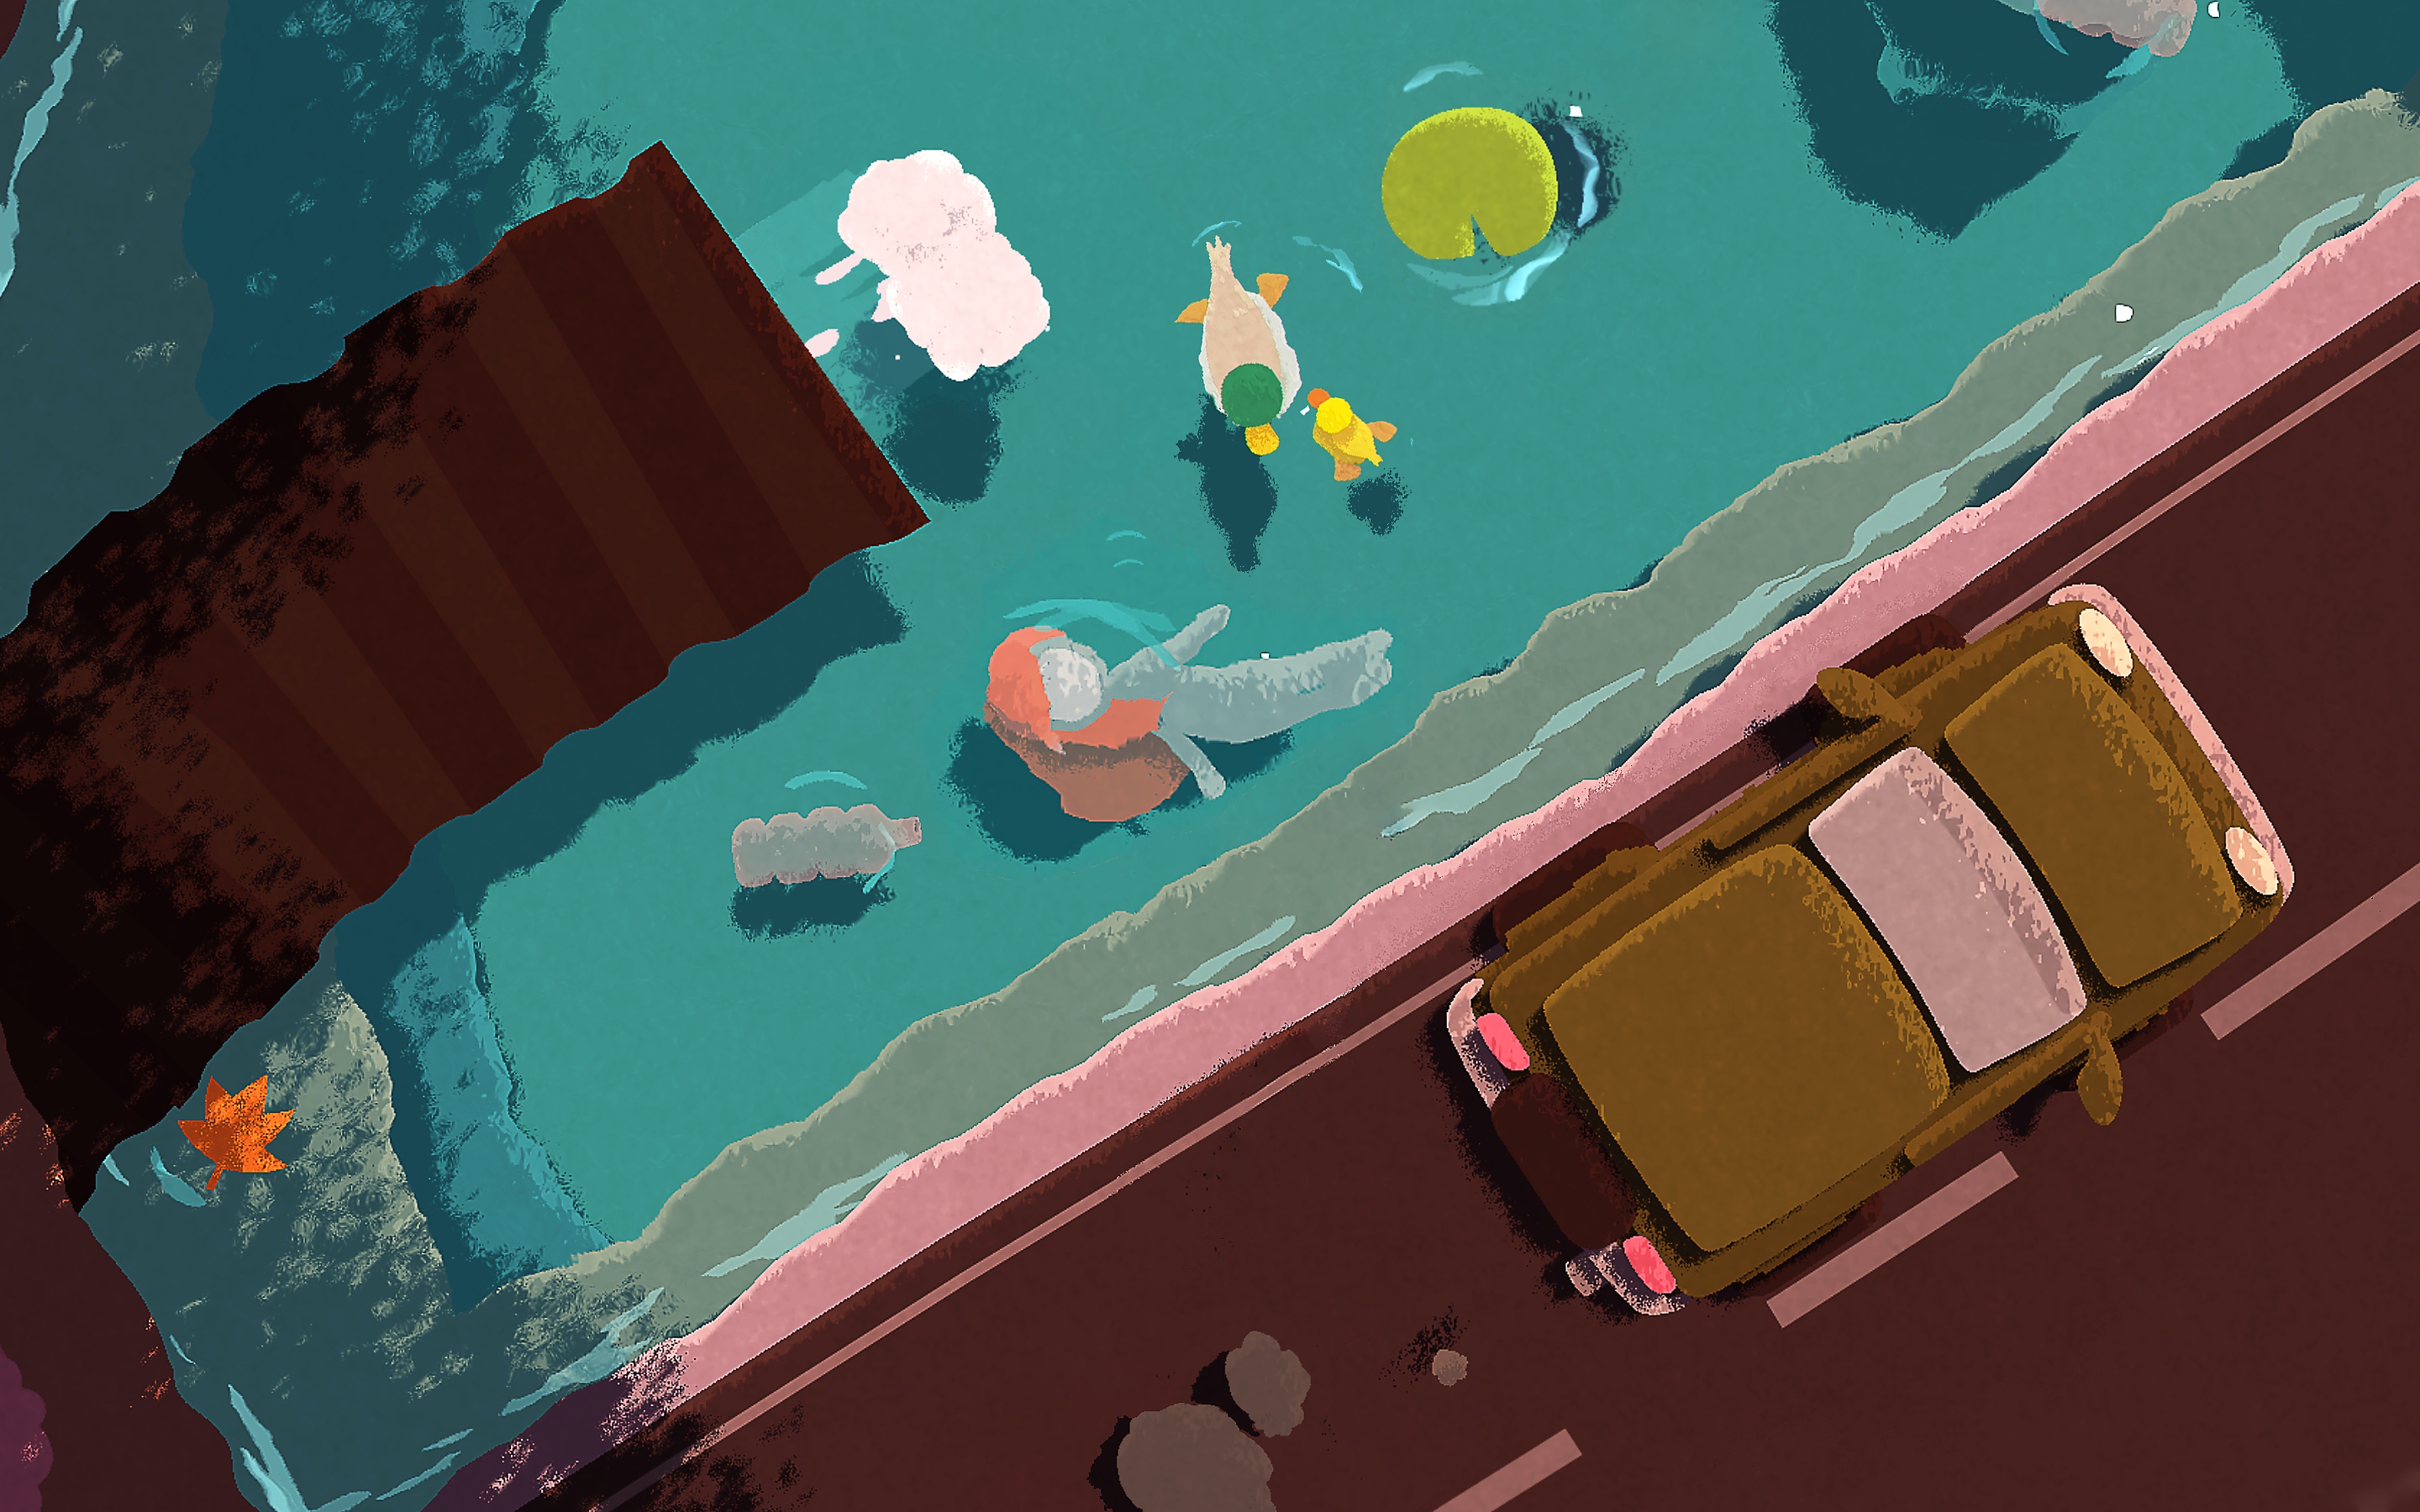 Naiad – zrzut ekranu przedstawiający postać płynącą w dół rzeki, pod mostem, po którym przejeżdżają samochody